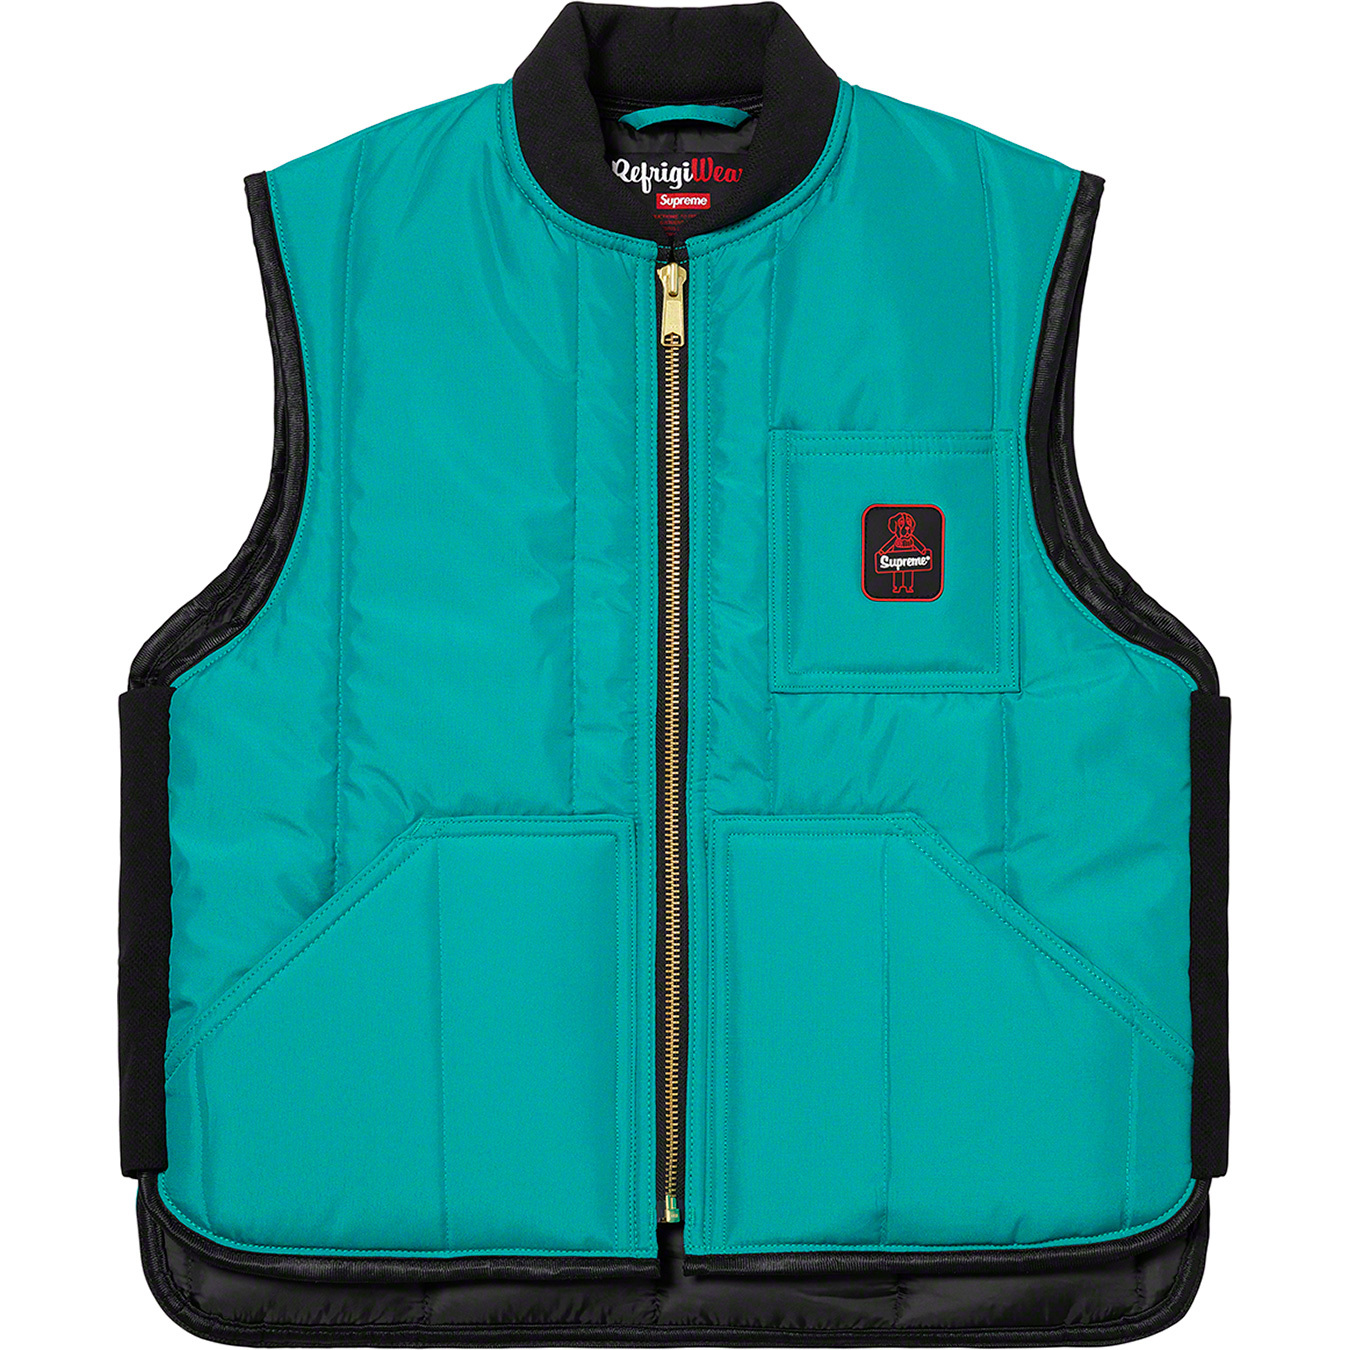 Supreme®⁄RefrigiWear® Insulated Iron-Tuff Vest | Supreme 20fw